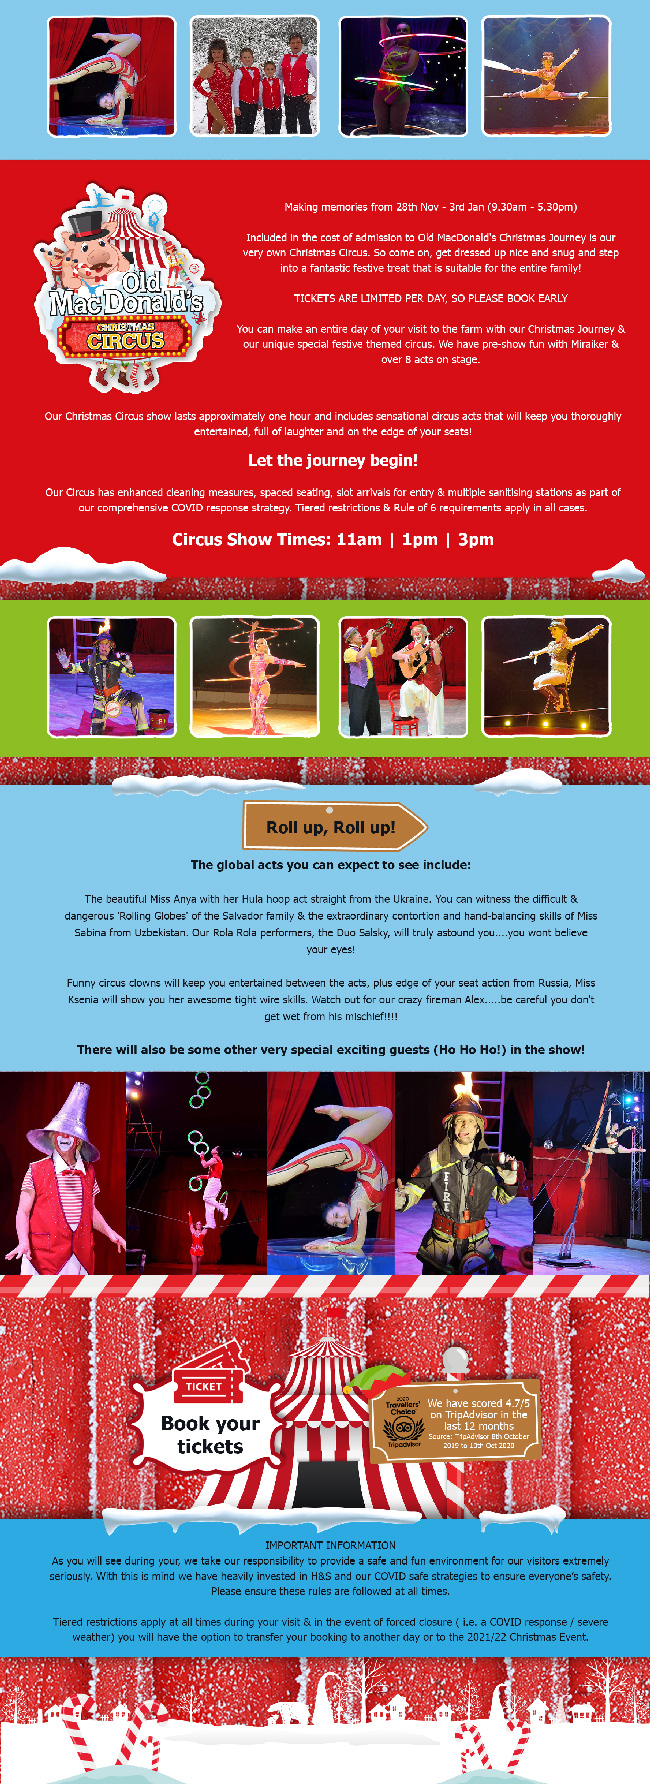 Info on our Christmas Circus...